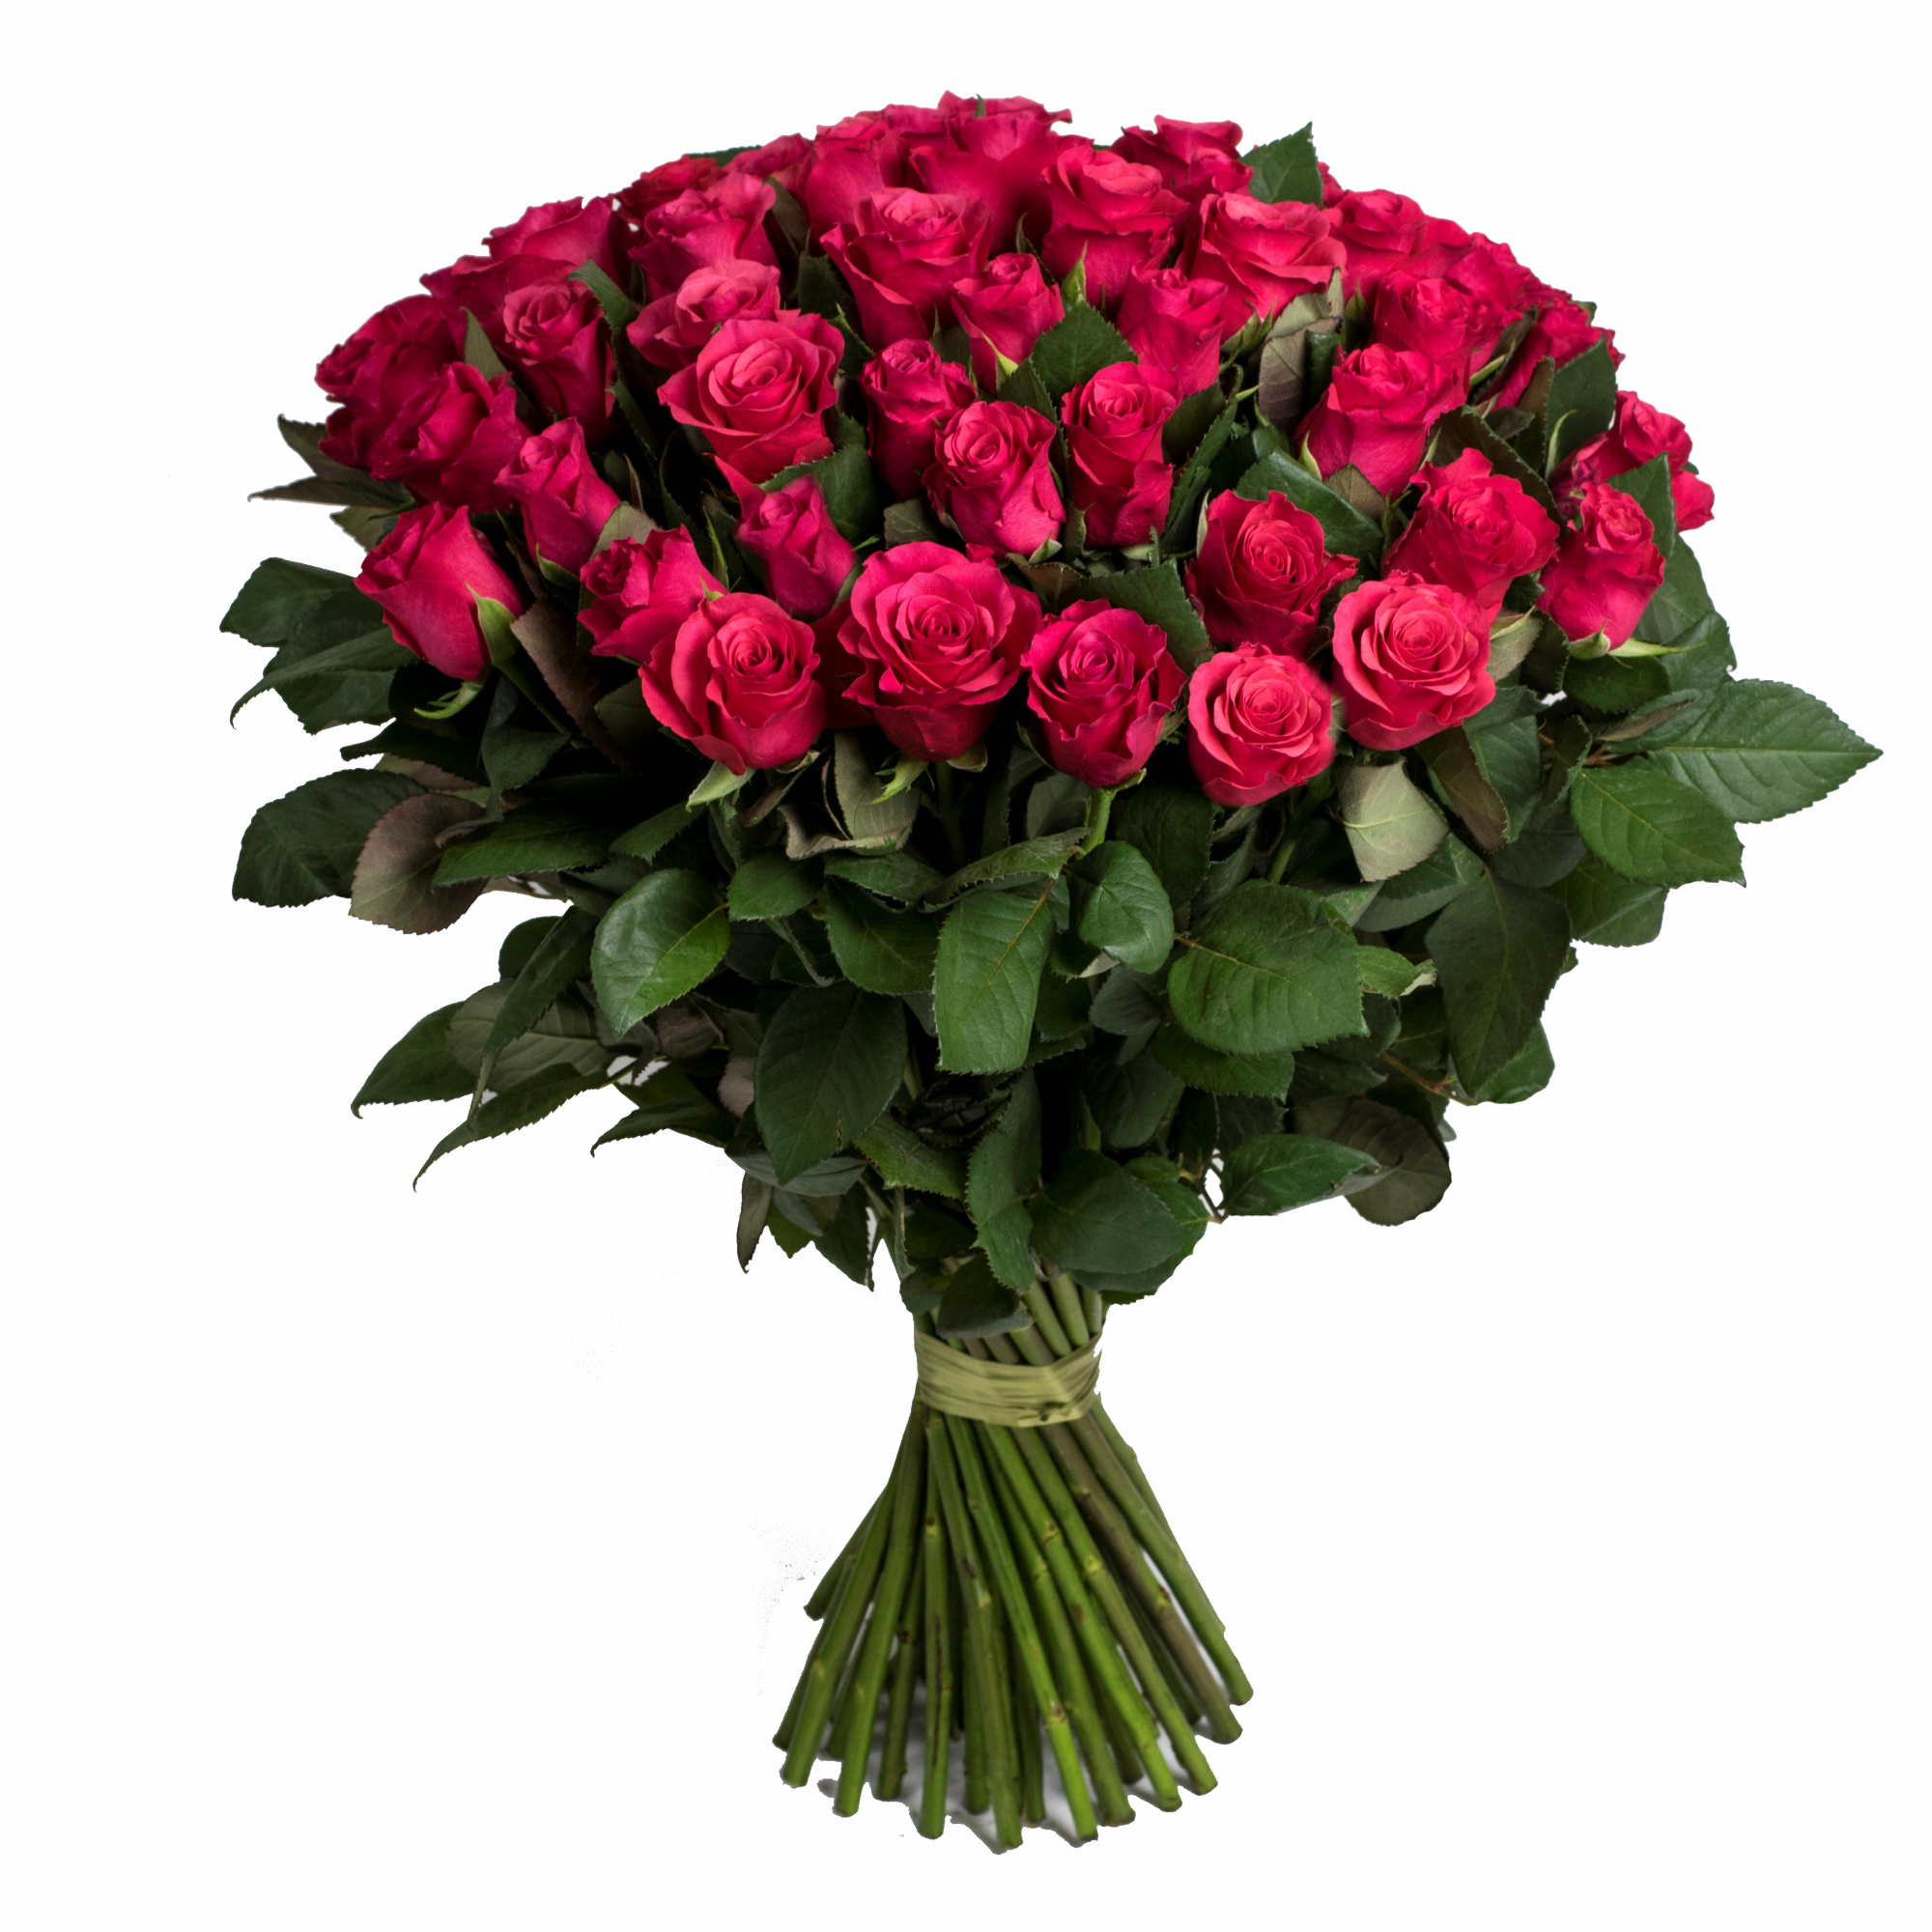 Купить розы в москве с доставкой дешево